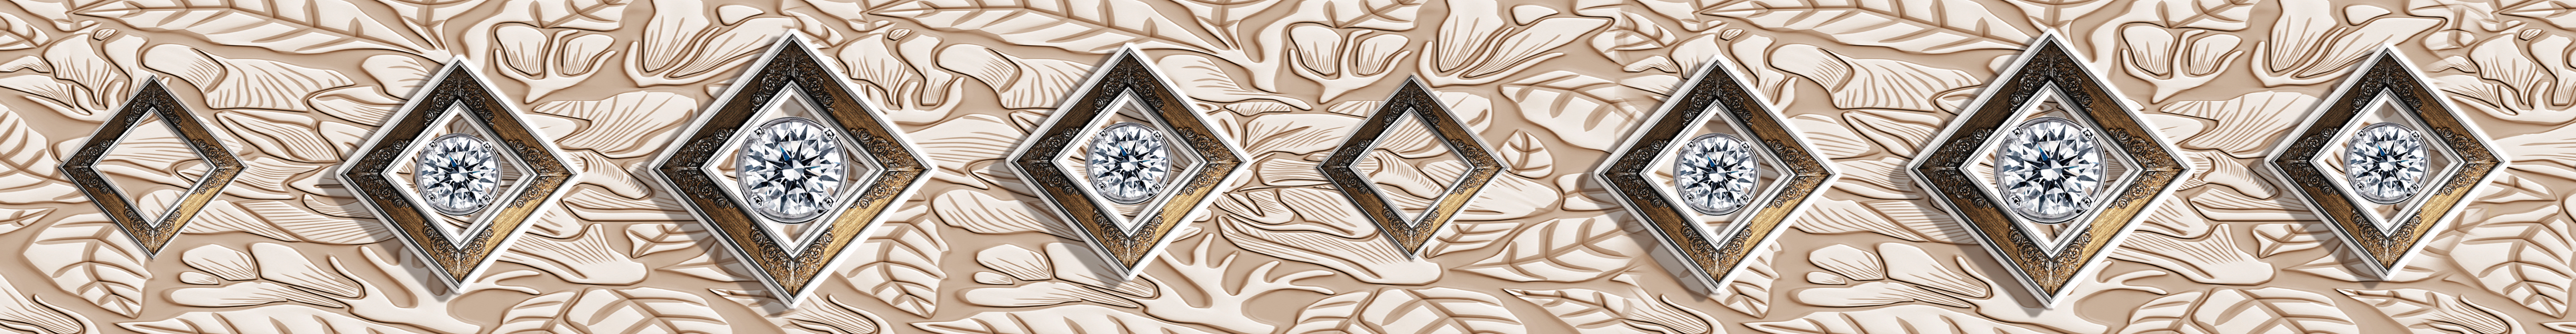 腰线 钻石 金色 方块 菱形 欧式 耐刮板,肤感打印,艺术玻璃,UV打印,高光系列 腰线 钻石 金色 方块 菱形 欧式